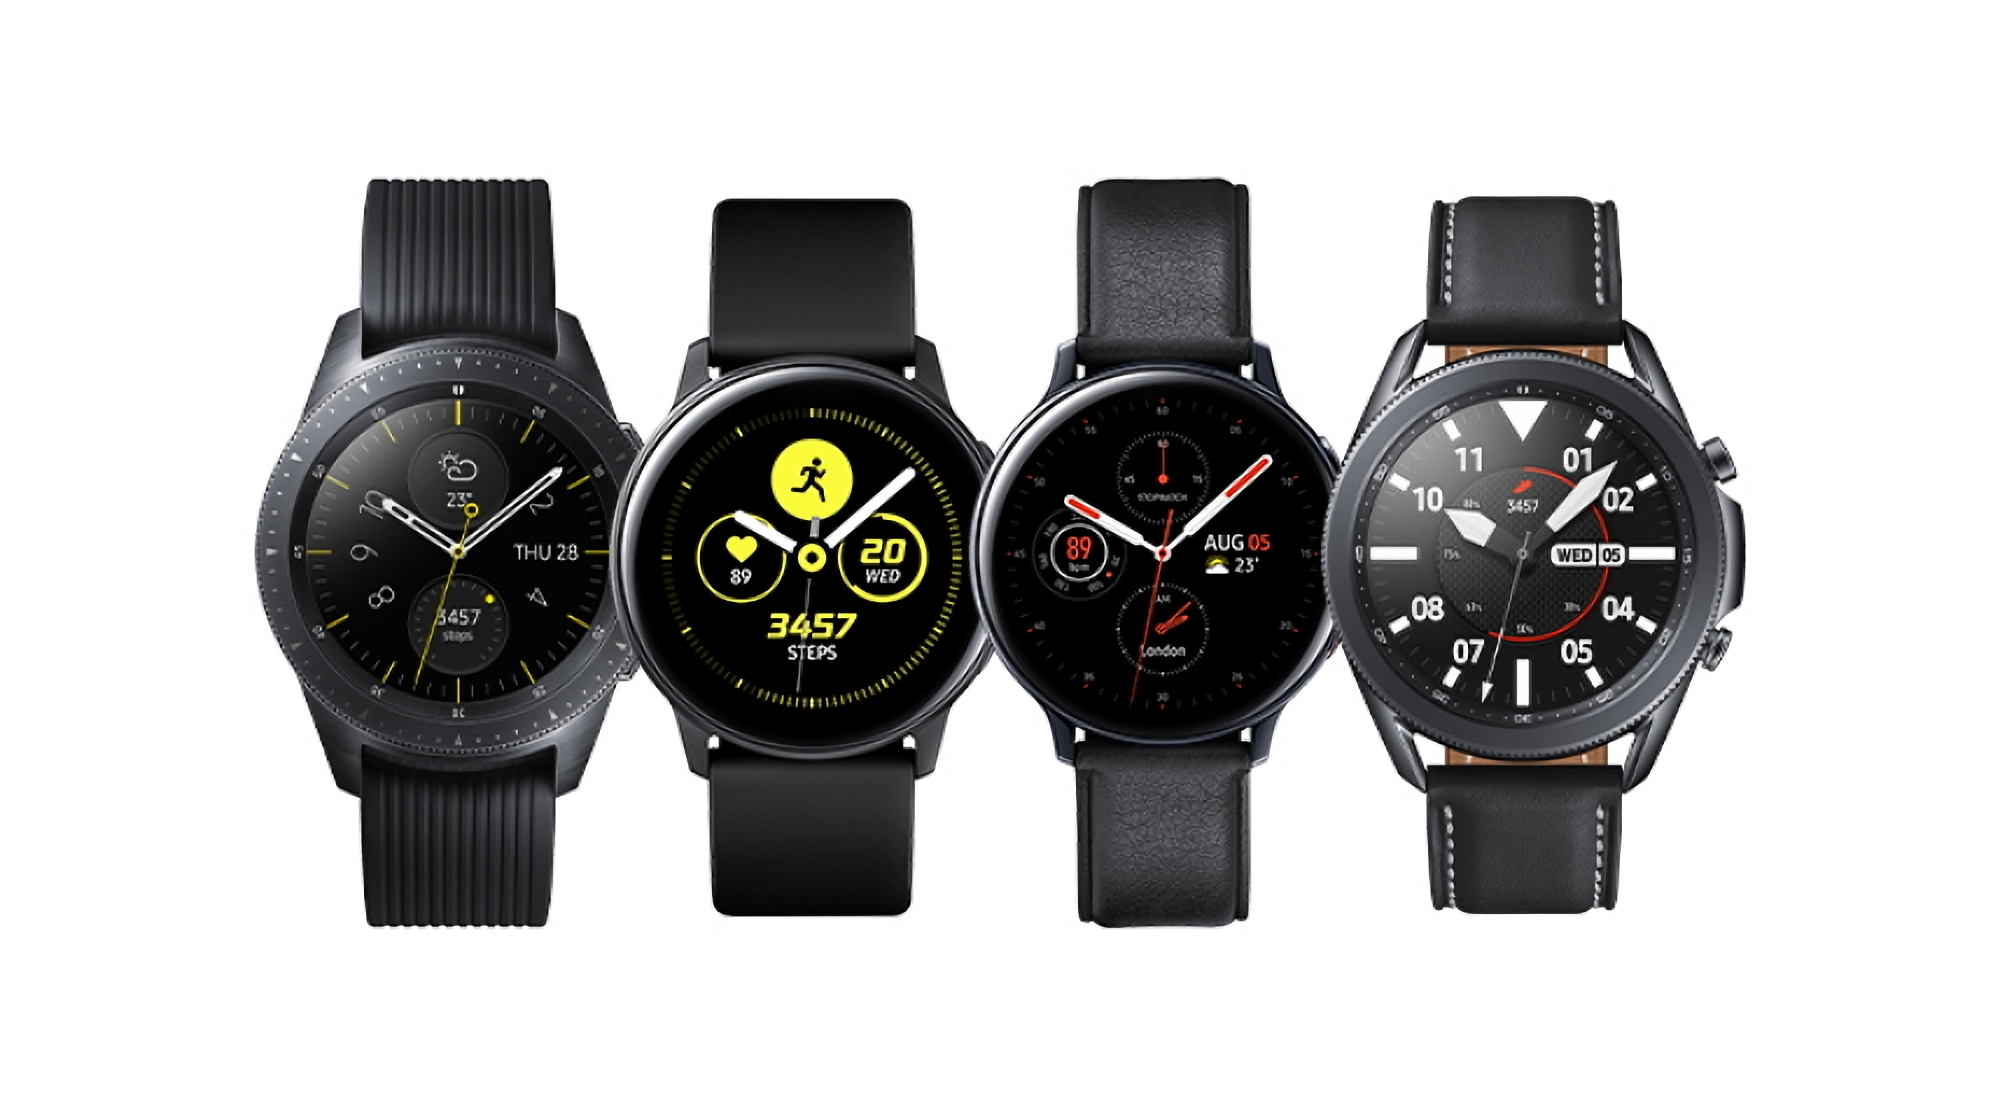 Los relojes inteligentes originales Samsung Galaxy Watch y Galaxy Watch Active comienzan a recibir una nueva actualización de software